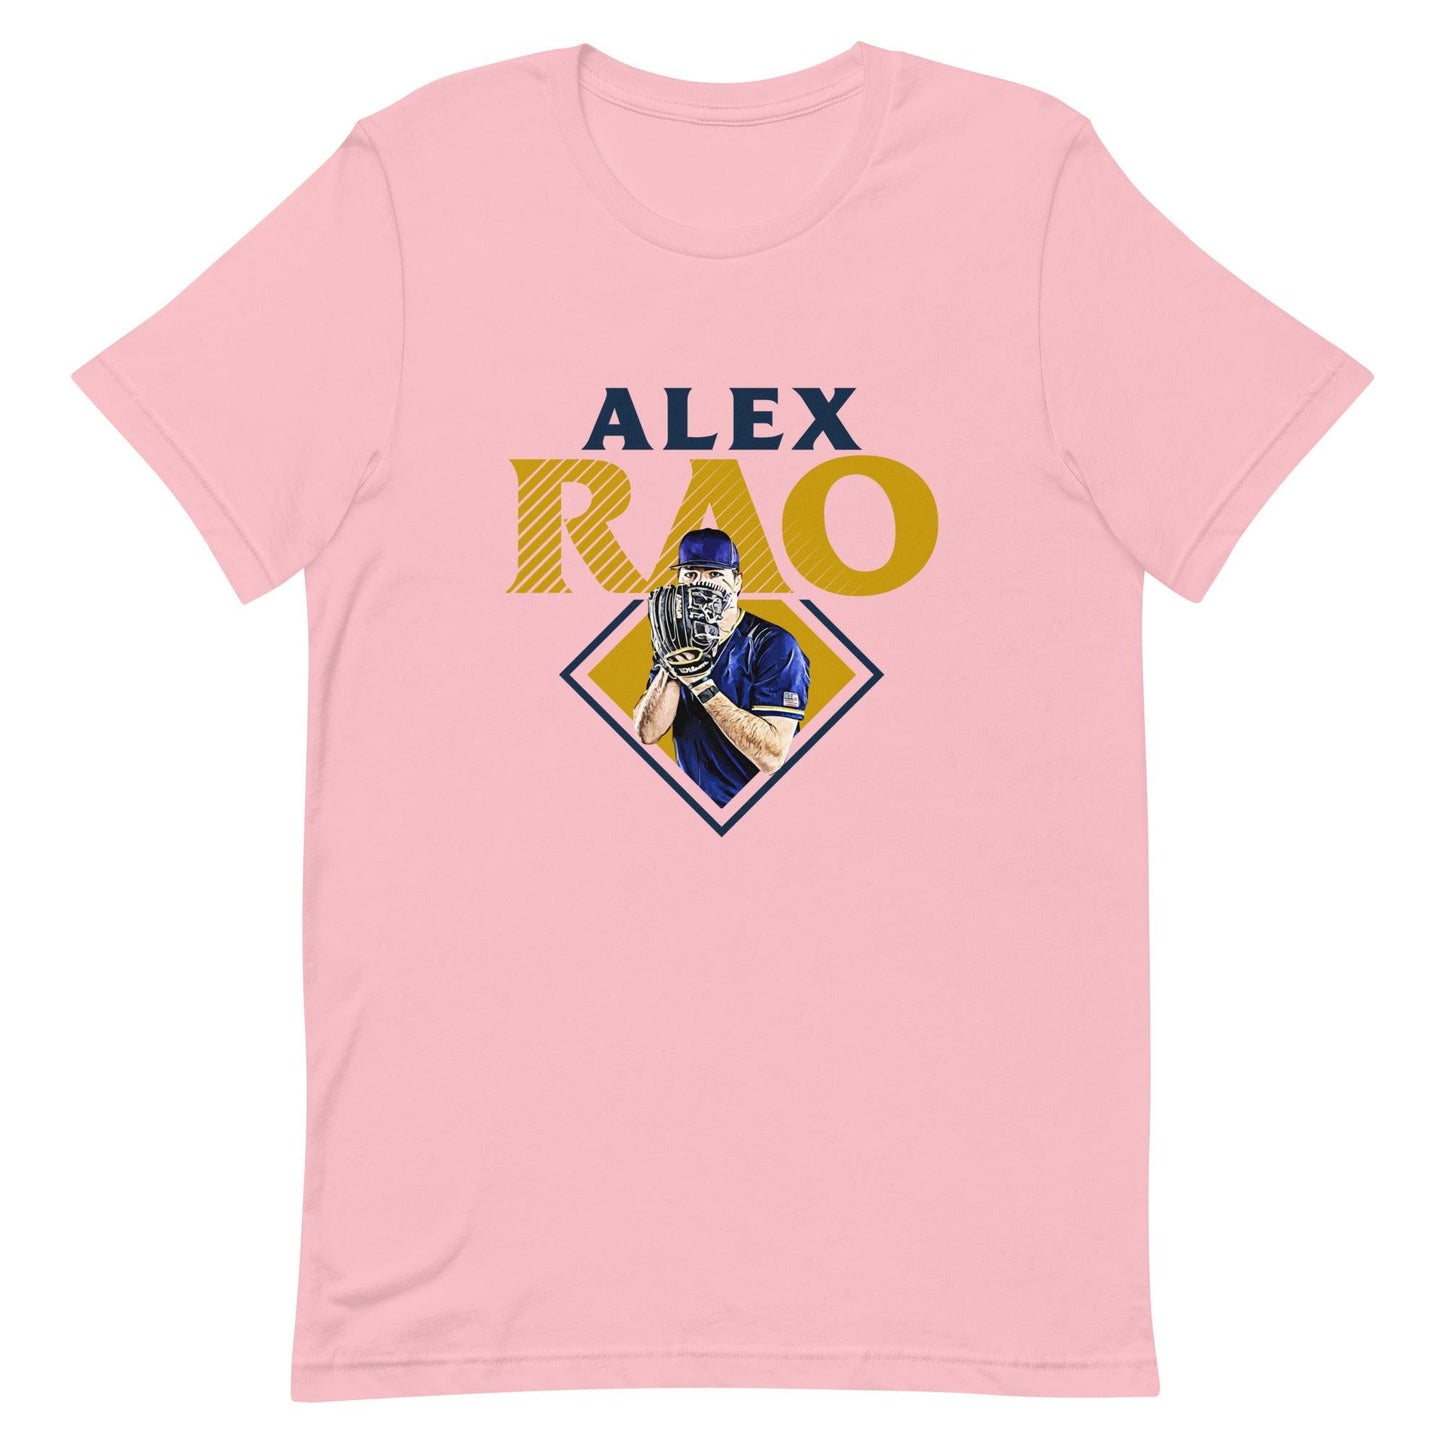 Alex Rao "Essential" t-shirt - Fan Arch